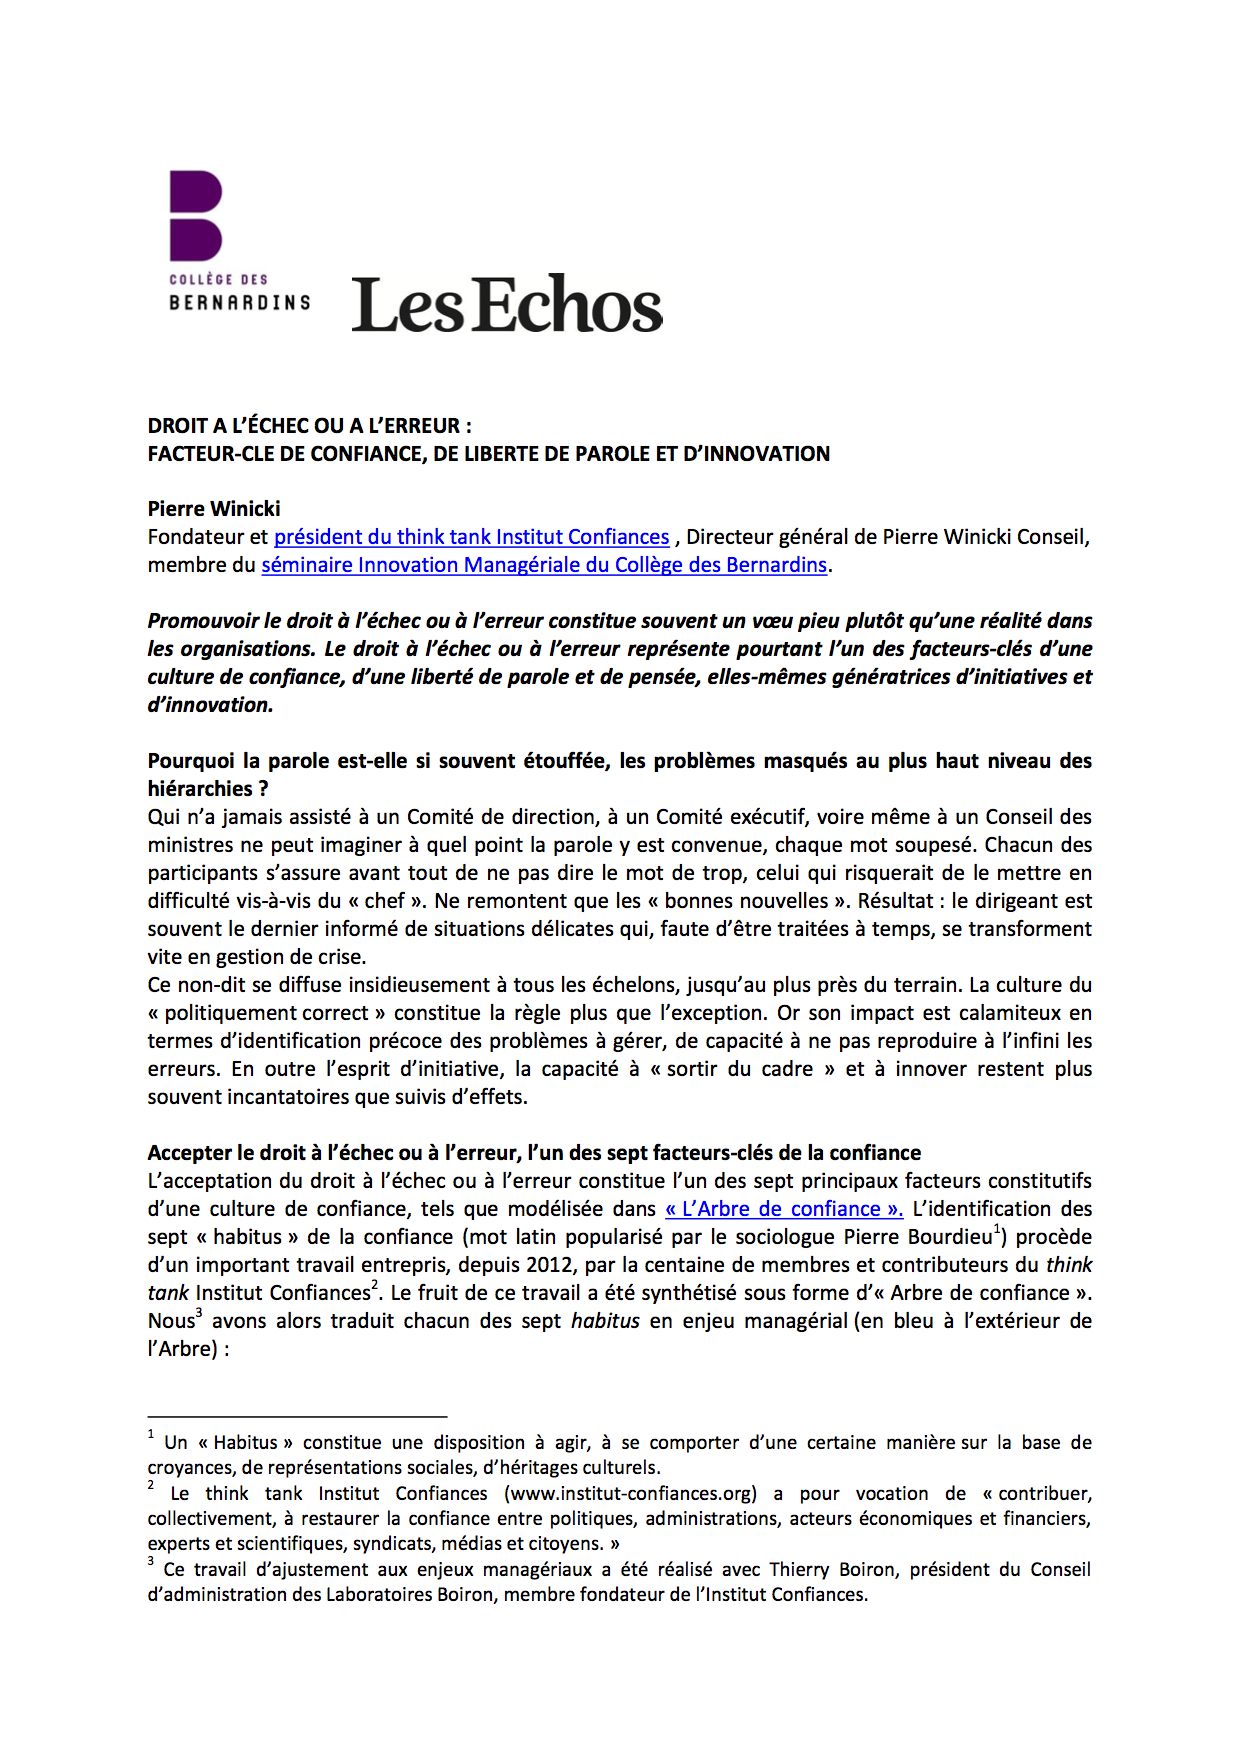 Le Cercle Les Echos-College des Bernardins-Confiance-Pierre Winicki